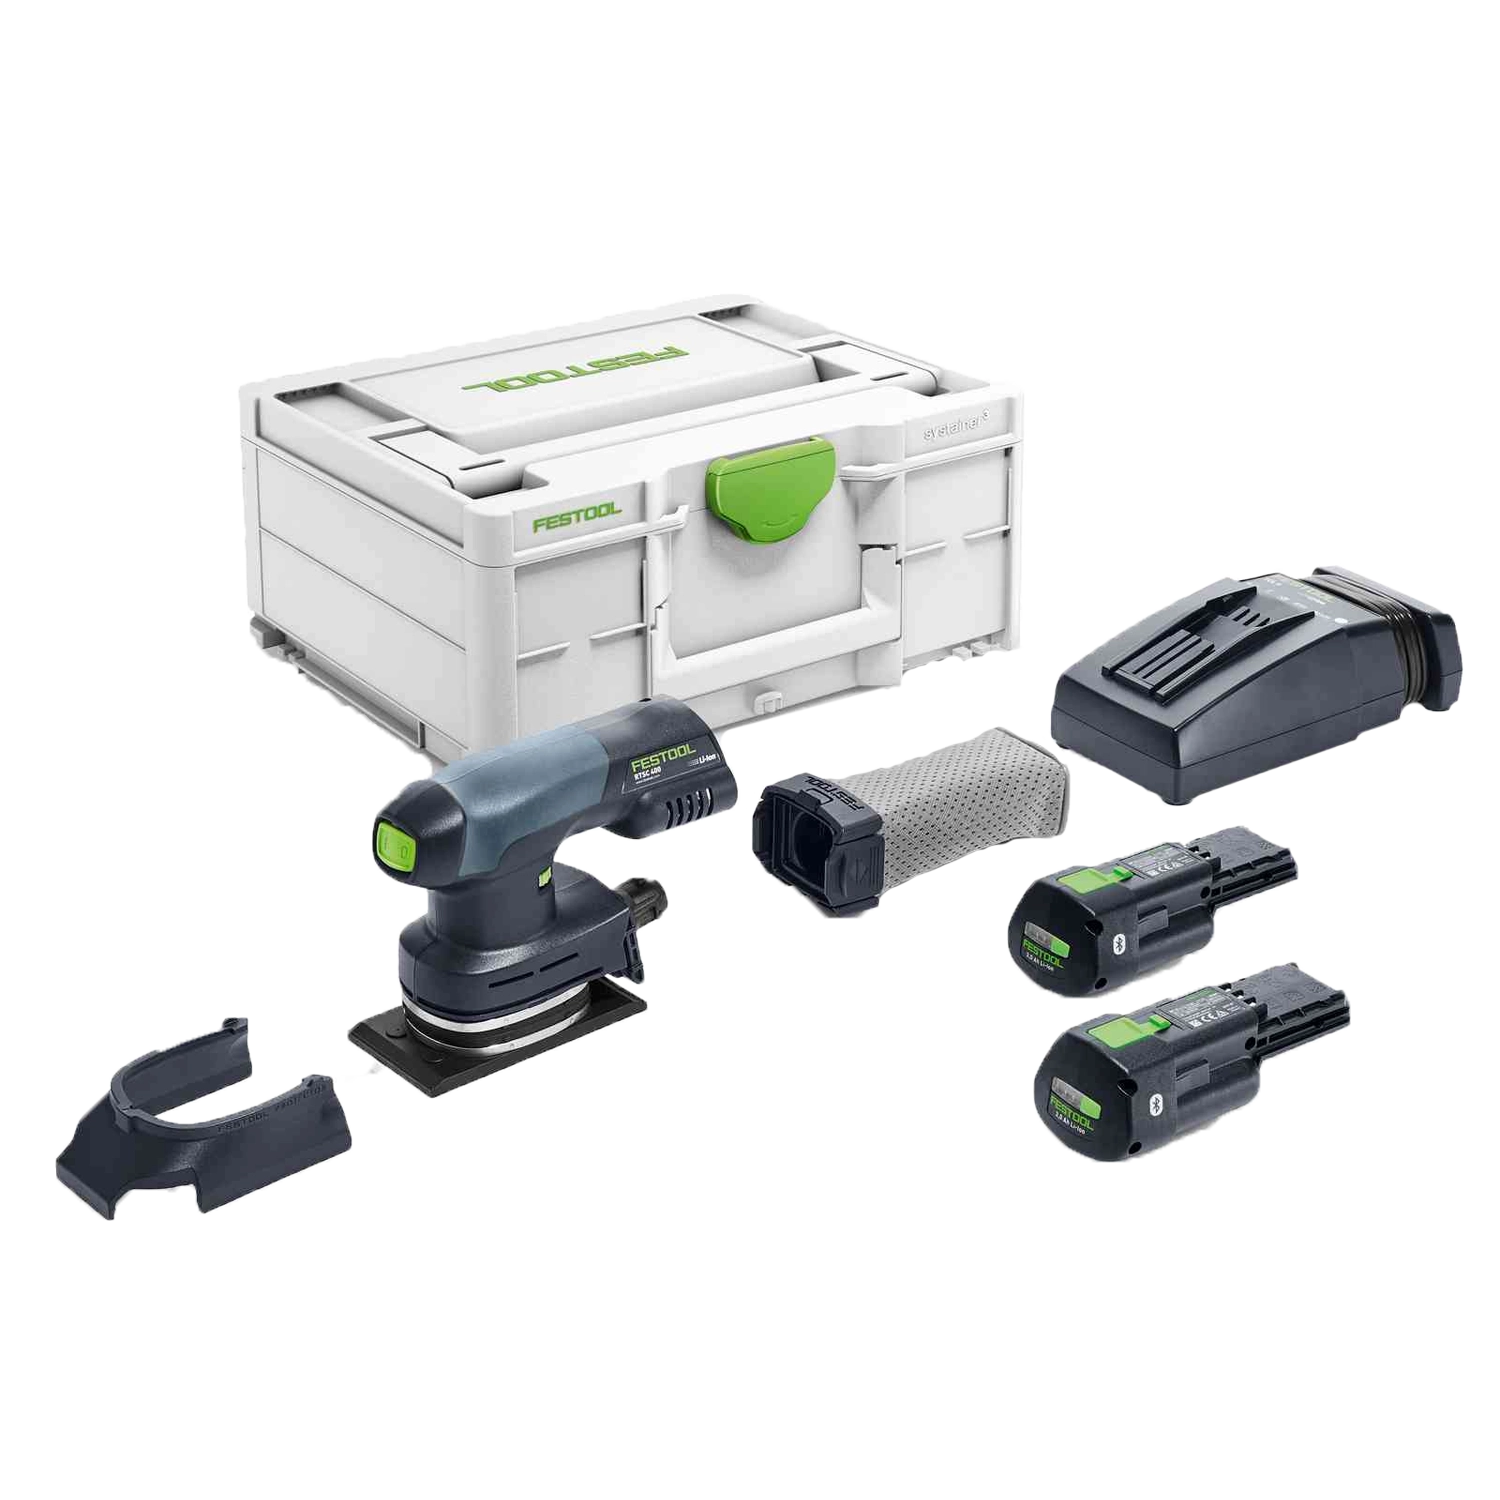 Festool Vlakschuurmachine: Compacte, rechthoekige, groene en zwarte schuurmachine met een handvat bovenaan en een accu, in een duurzame koffer.